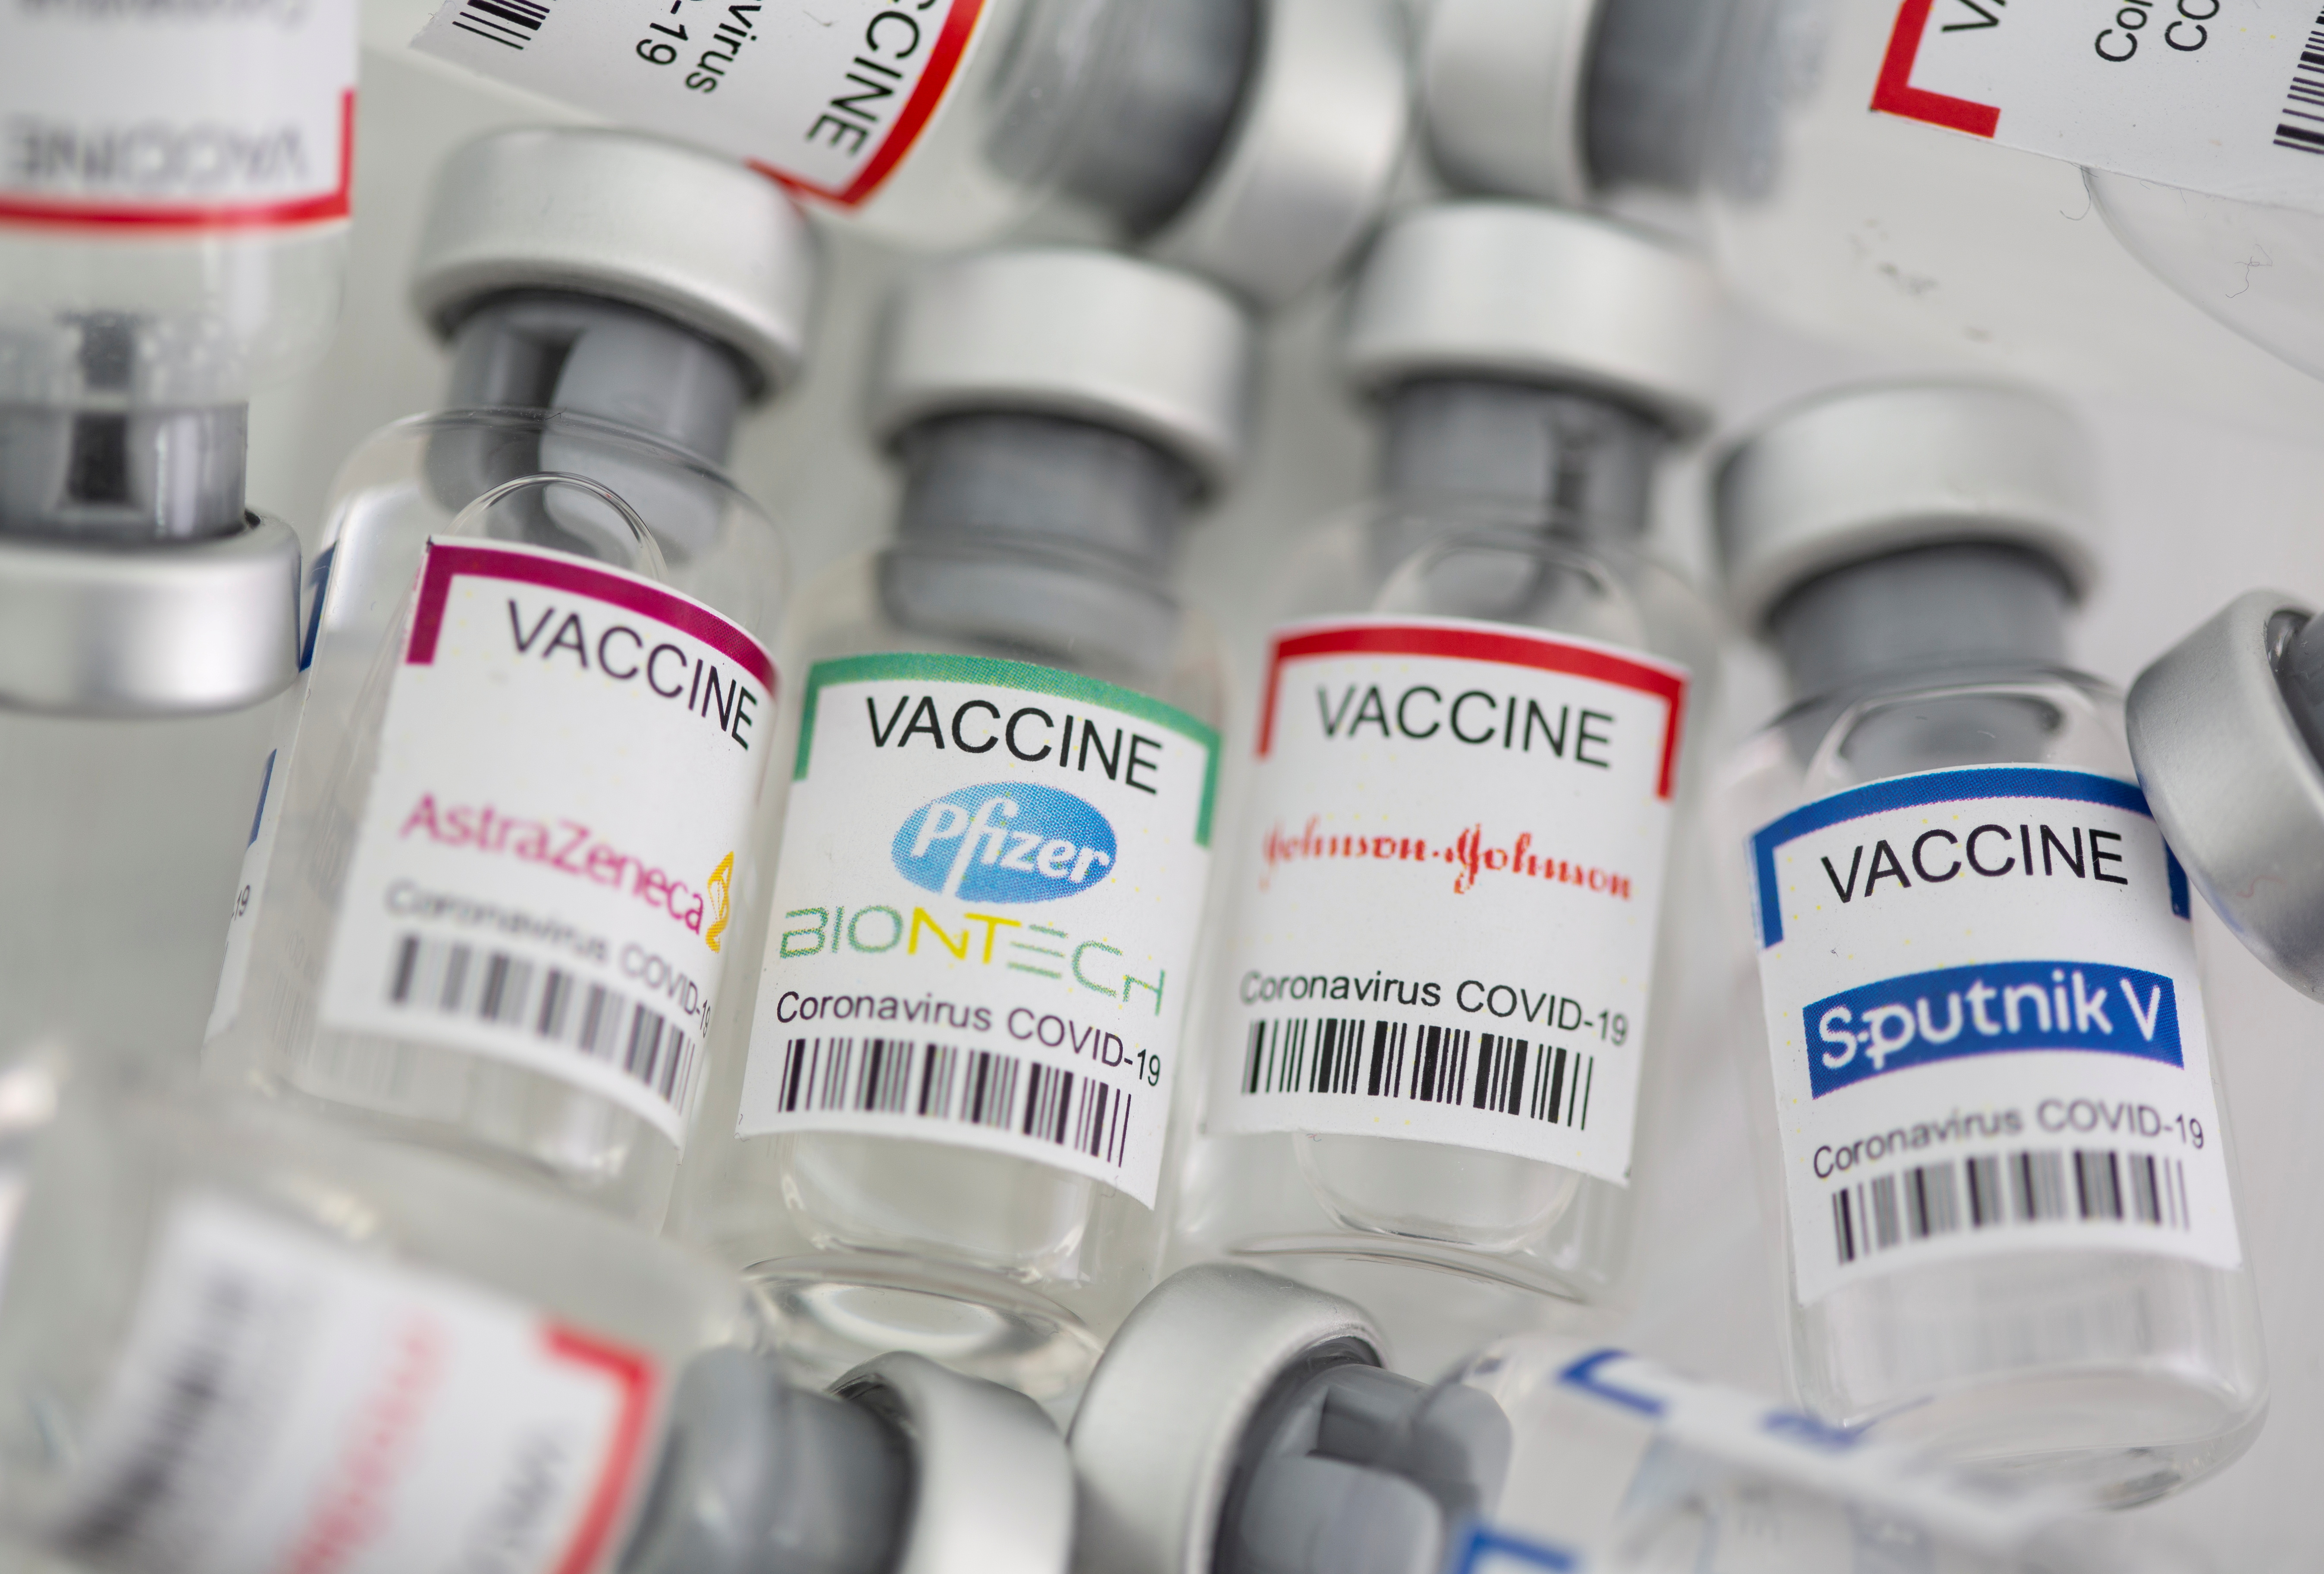 La OMS señala que las vacunas aprobadas son efectivas contra todas las variantes del Covid-19